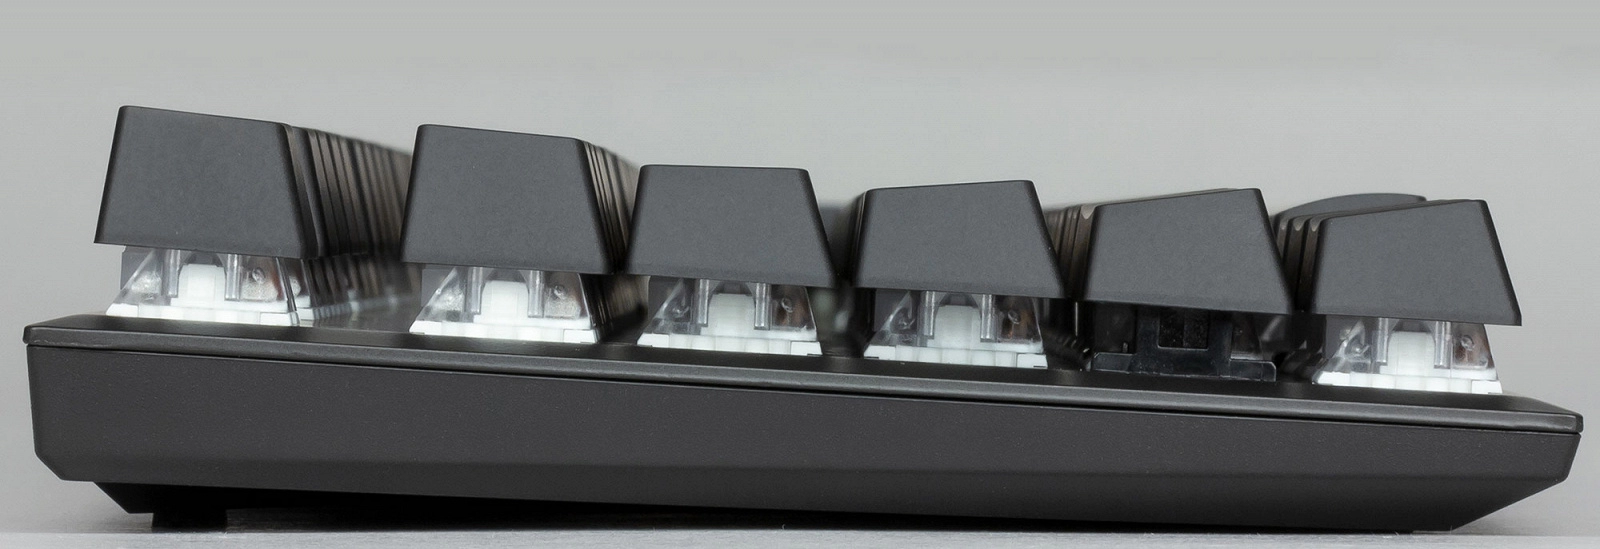 Tastatura cu fir mecanica HyperX Alloy FPS RGB, (HX-KB1SS2-RU), Kalih Speed Silver